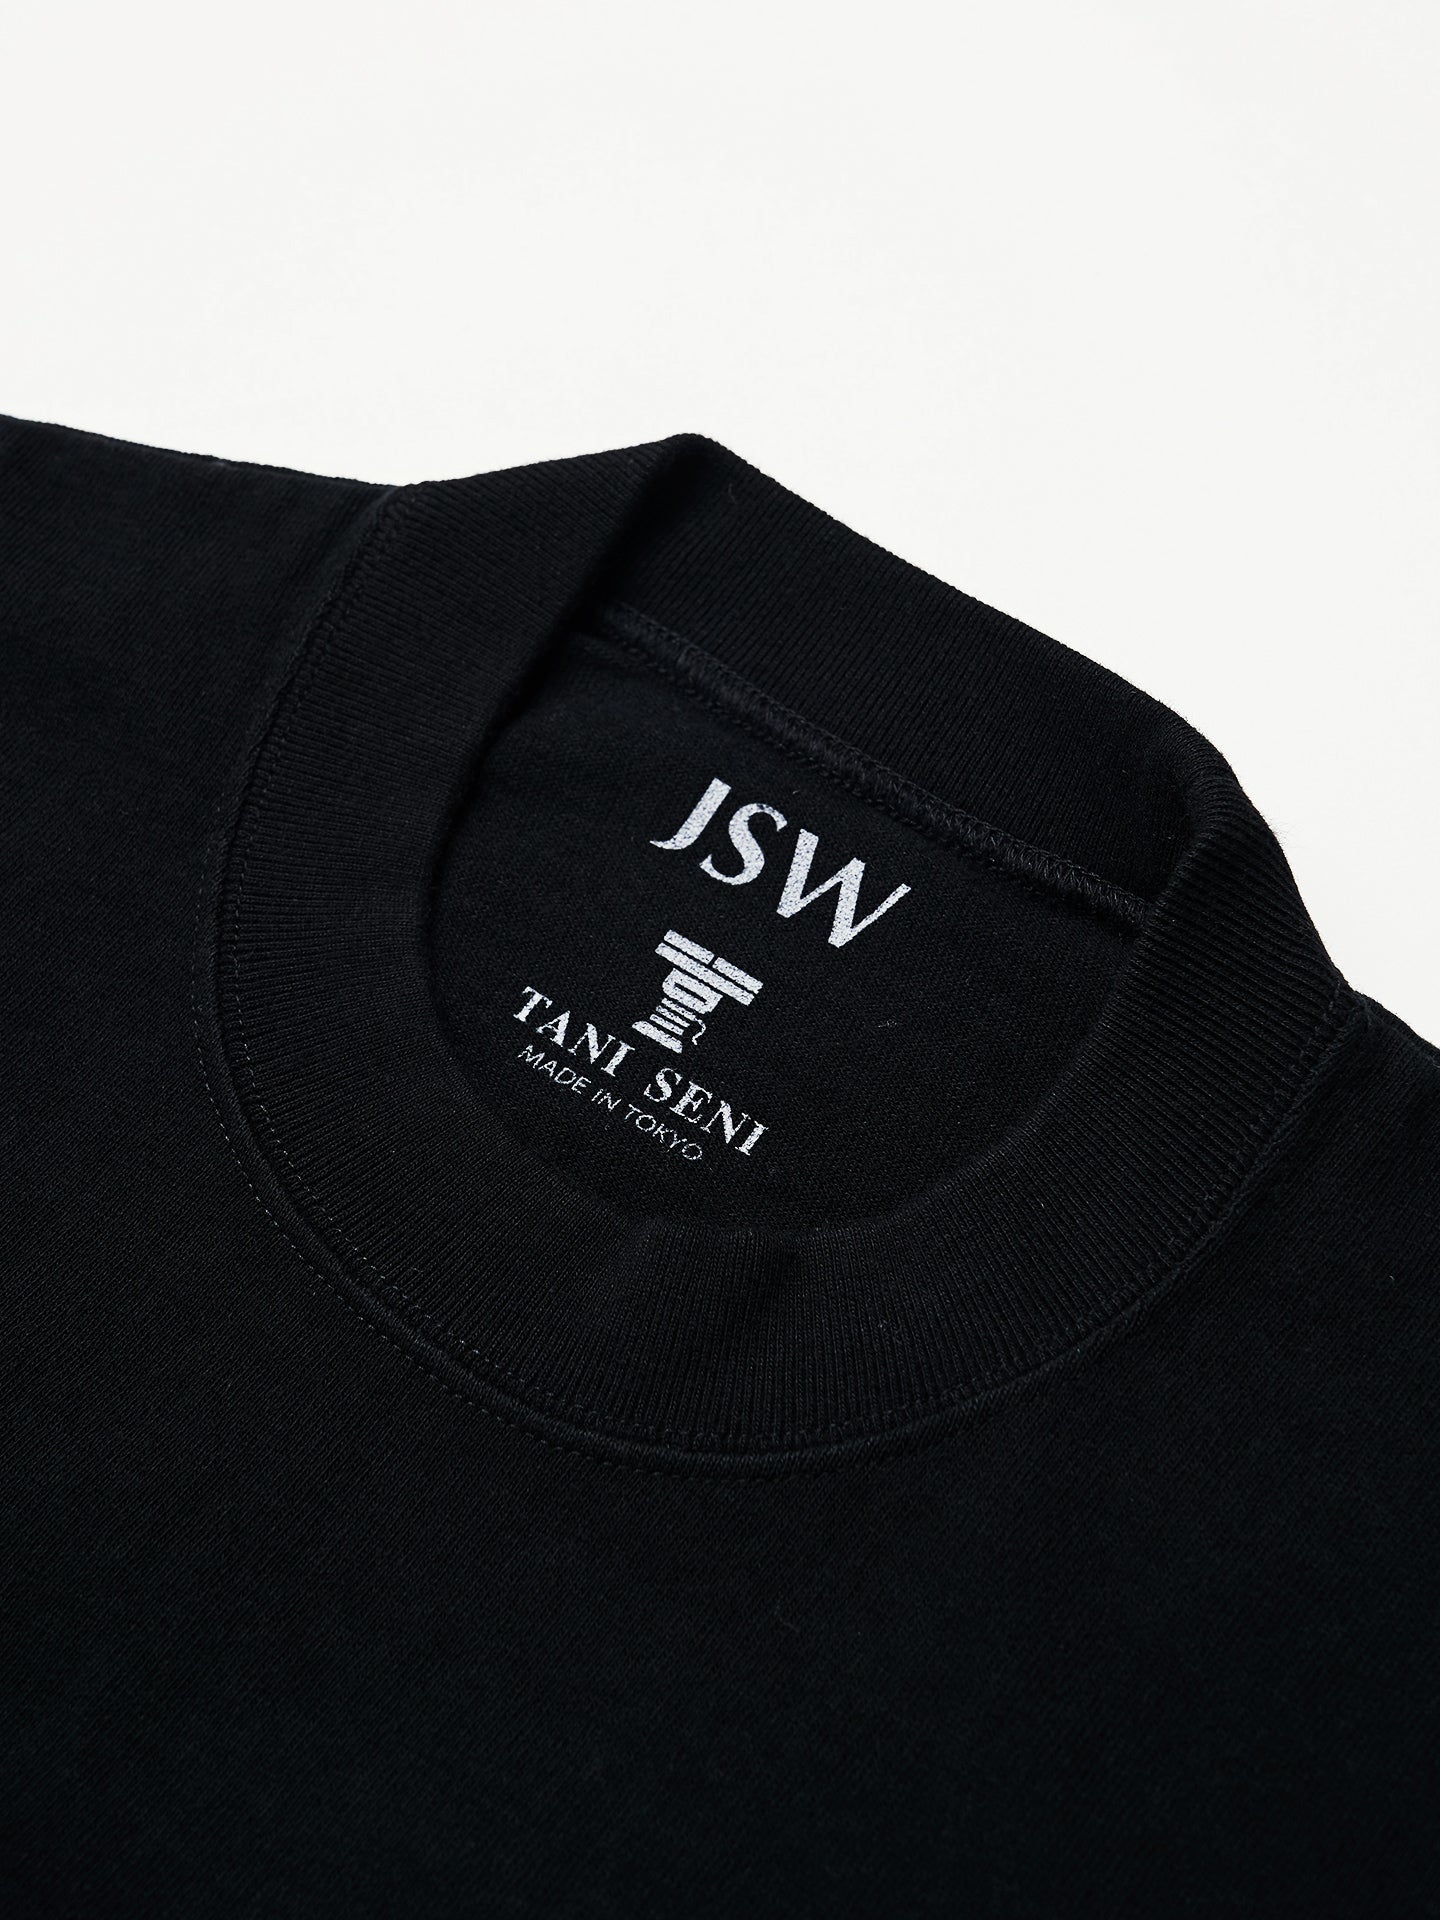 Premium T-shirt / Black